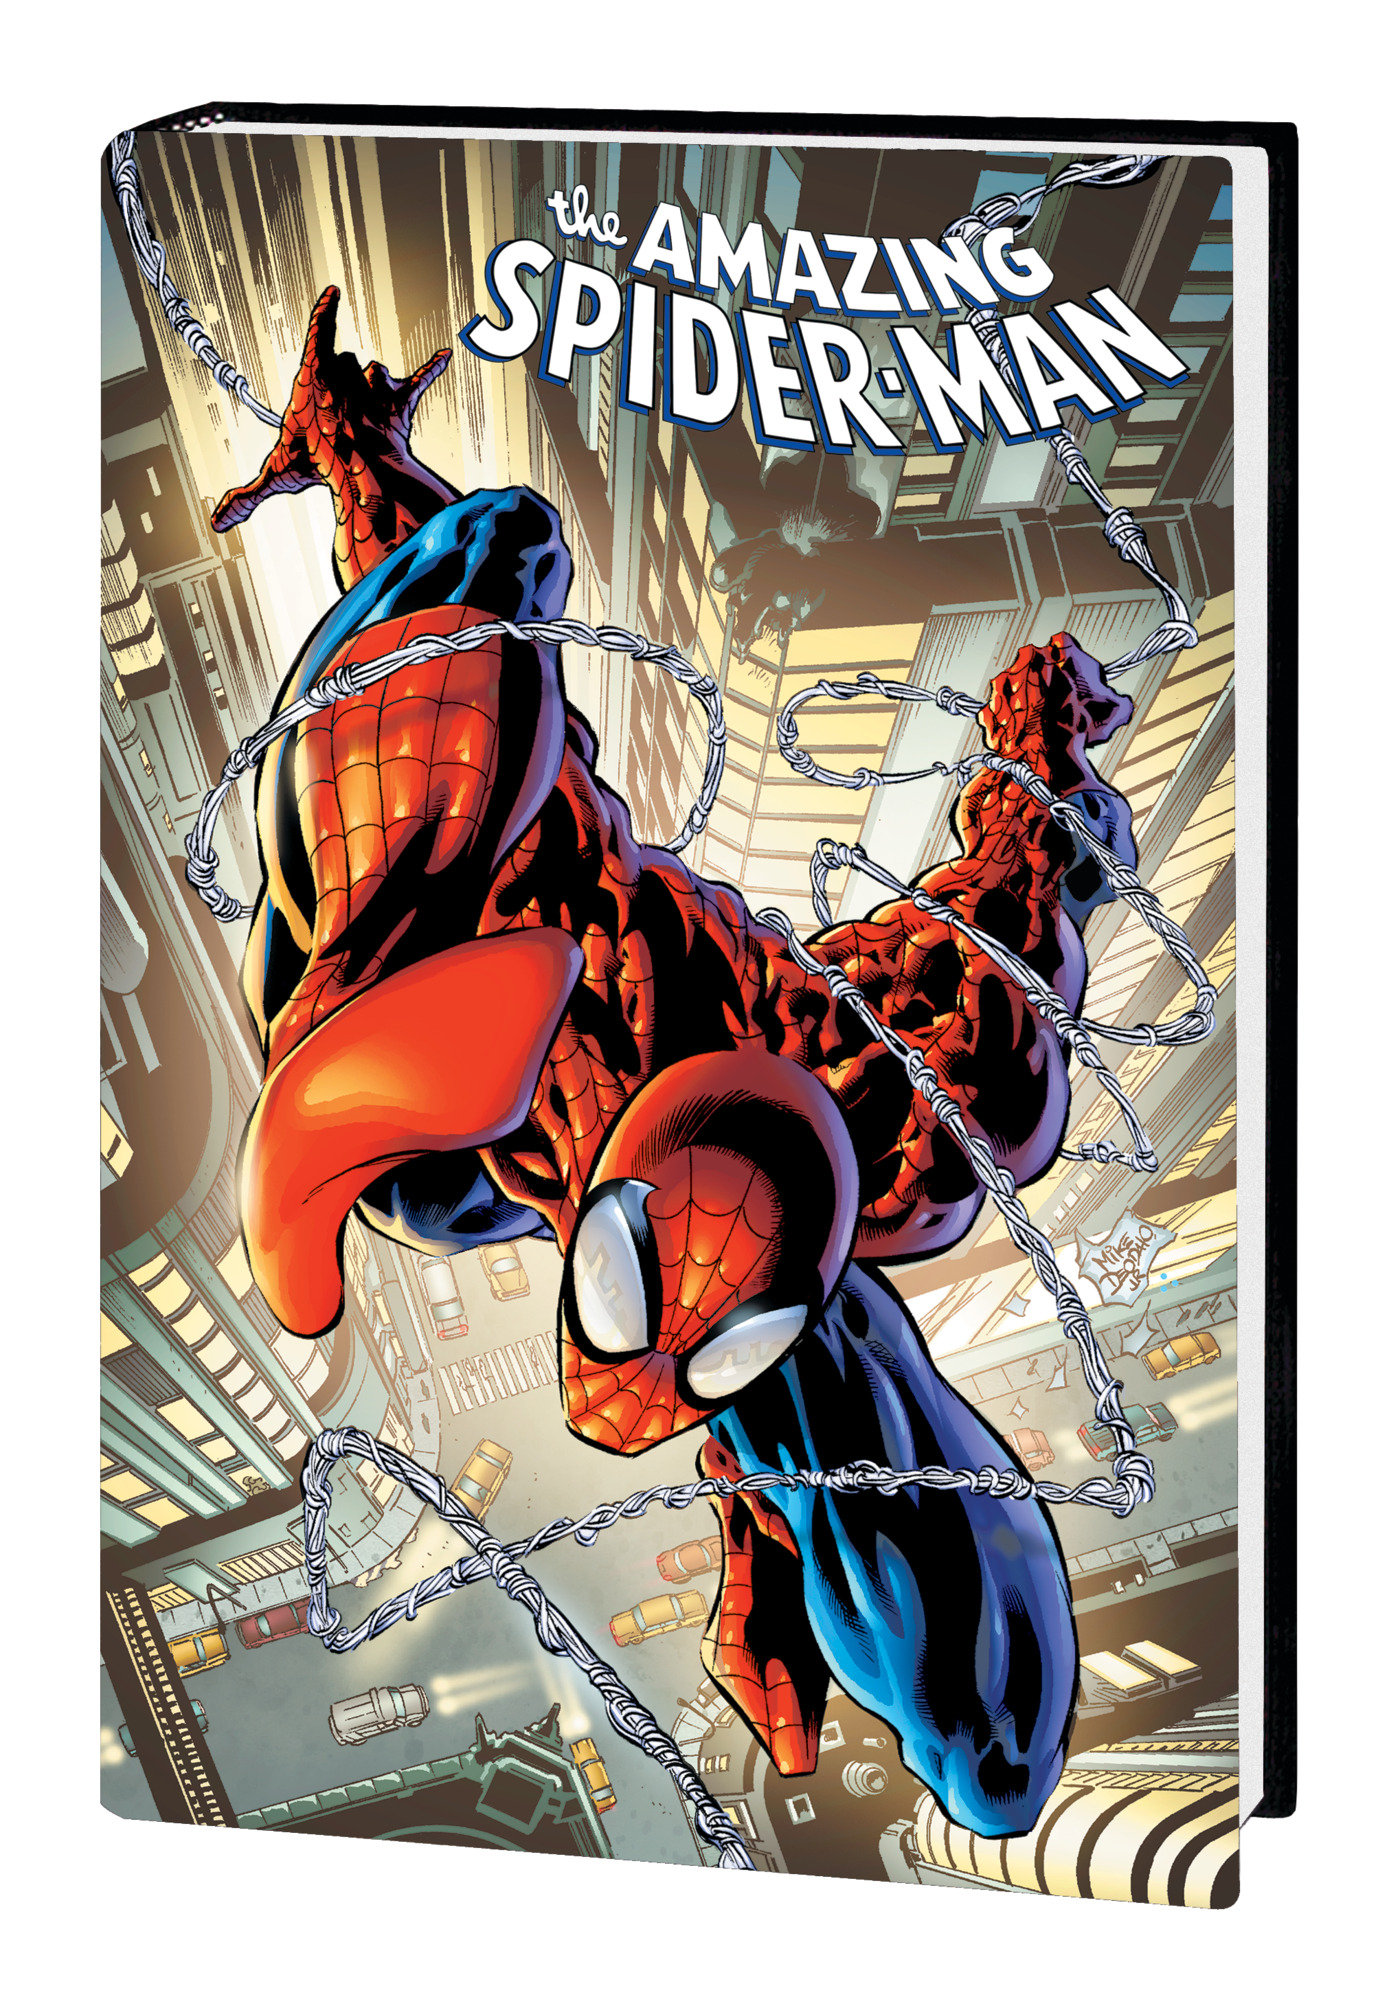 Buy Amazing Spider-Man Straczynski Omnibus Hardcover Volume 1